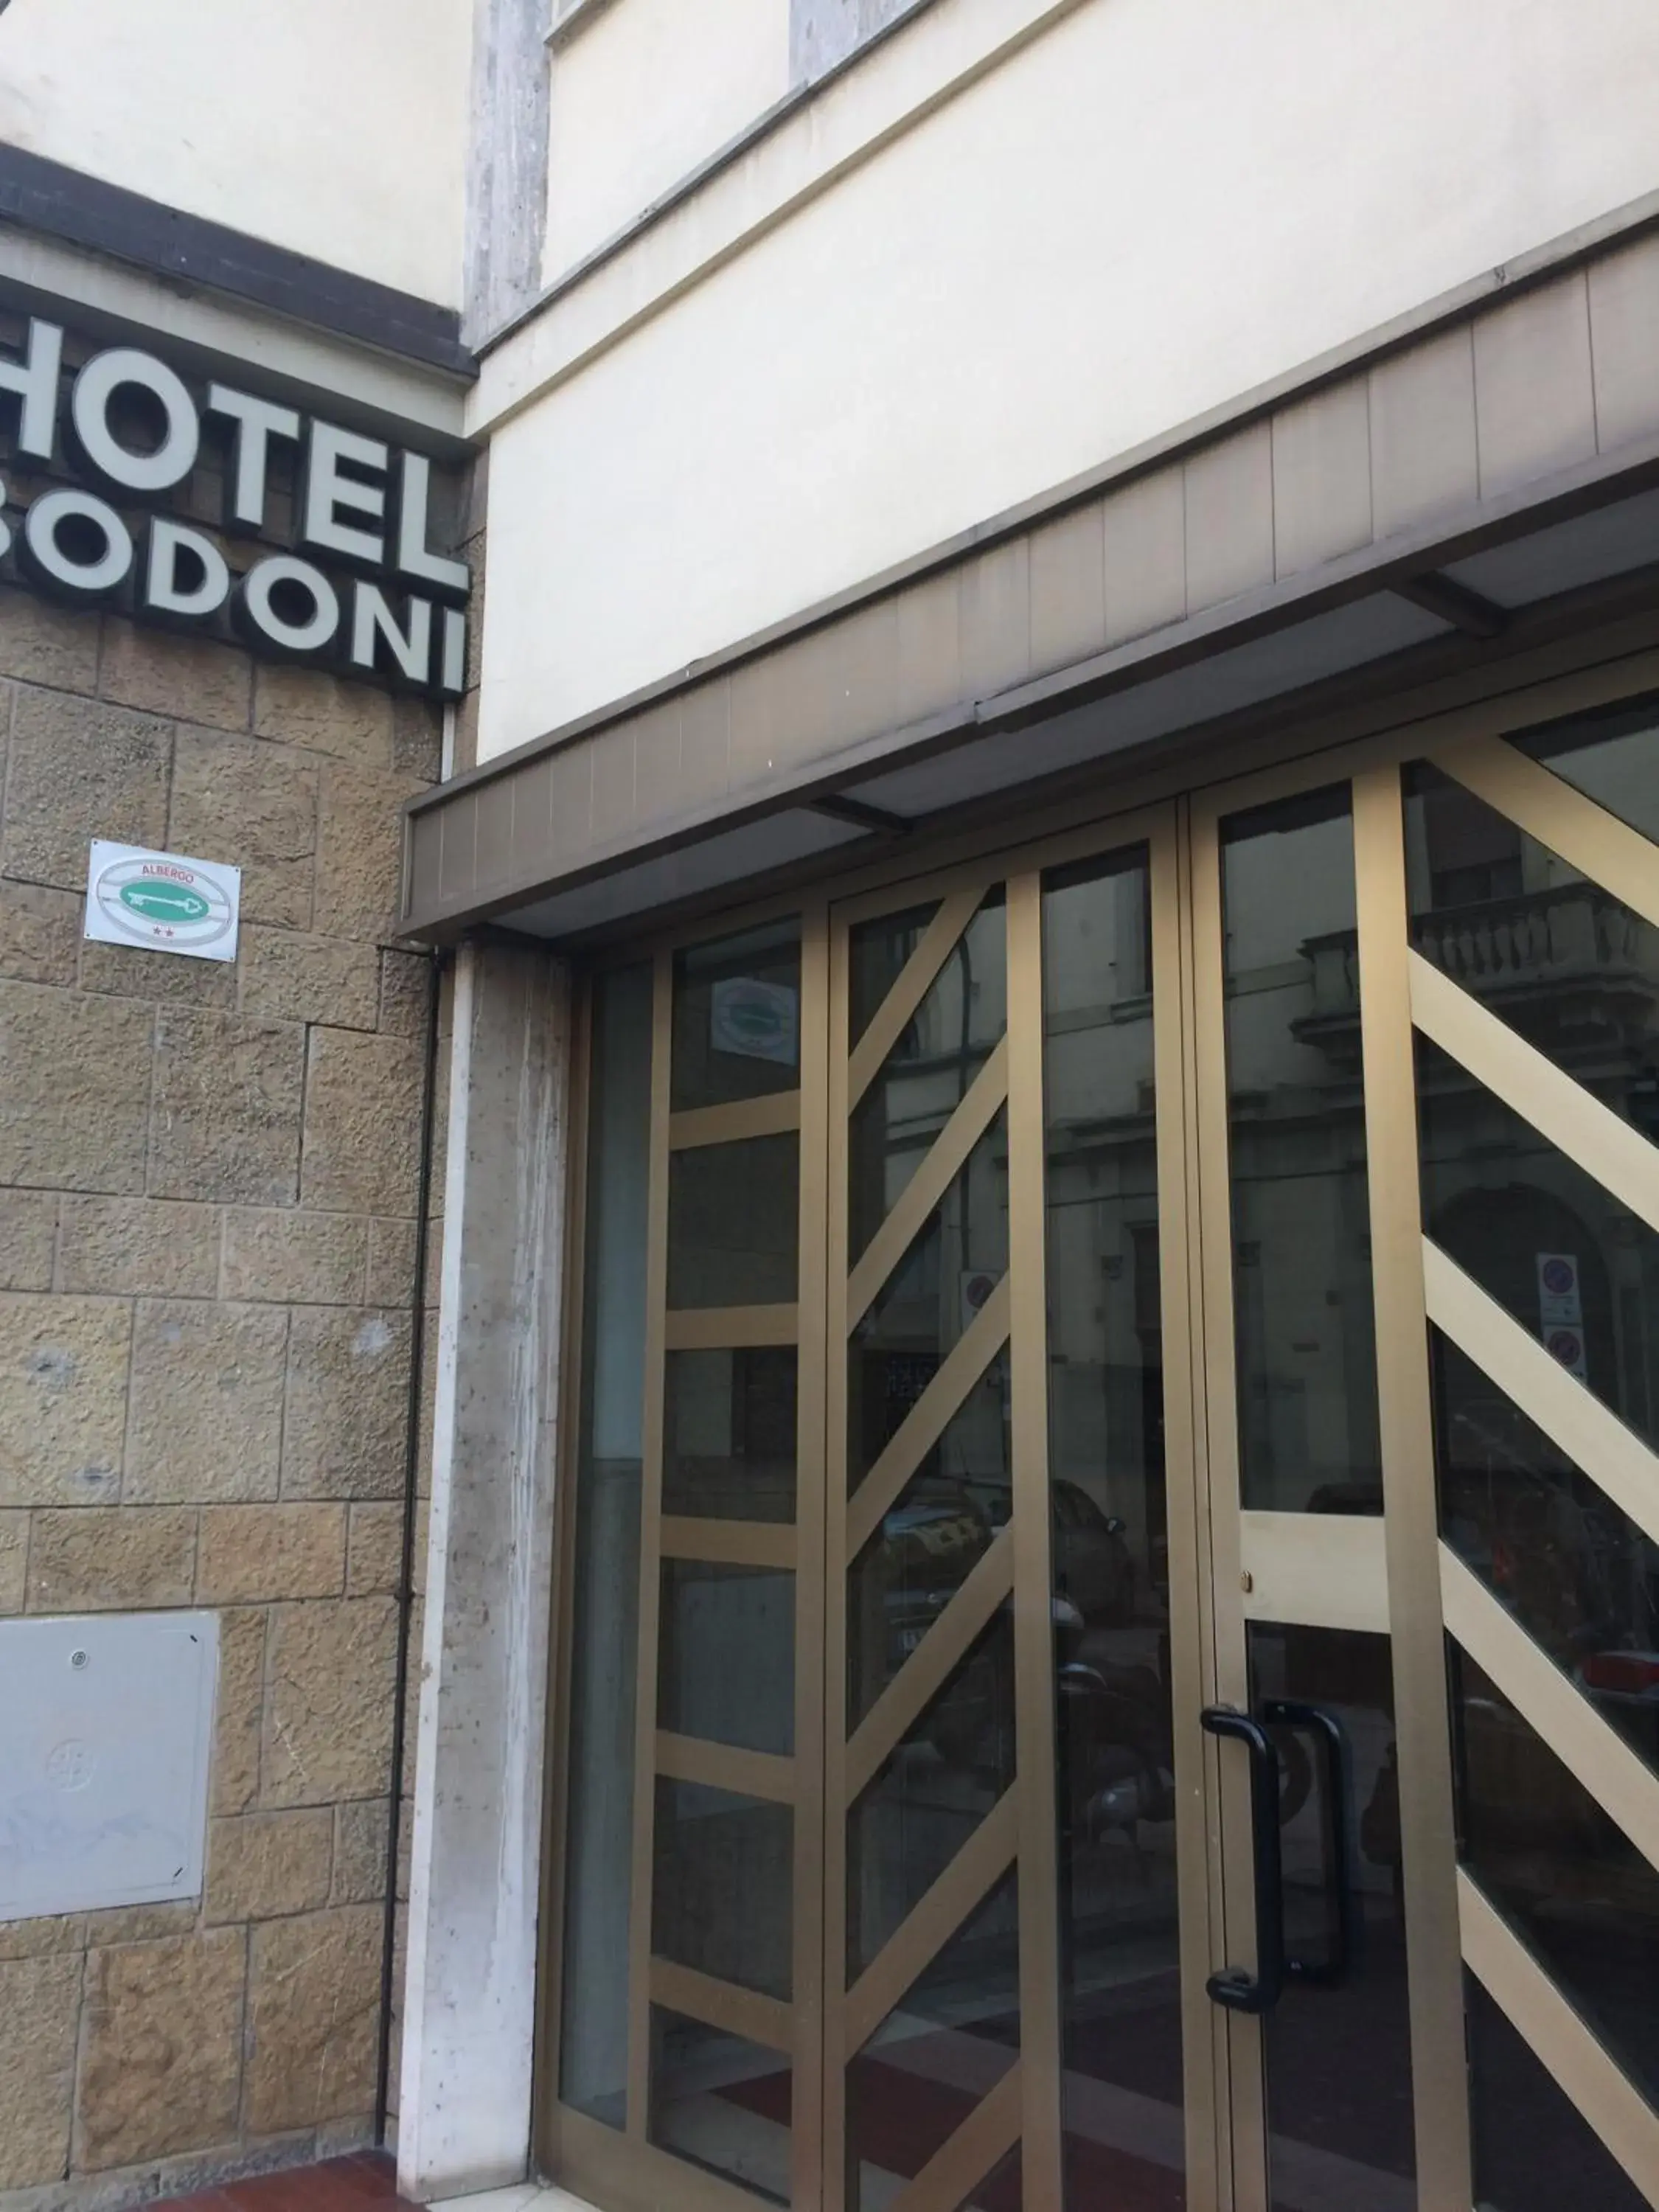 Property Building in Hotel Bodoni